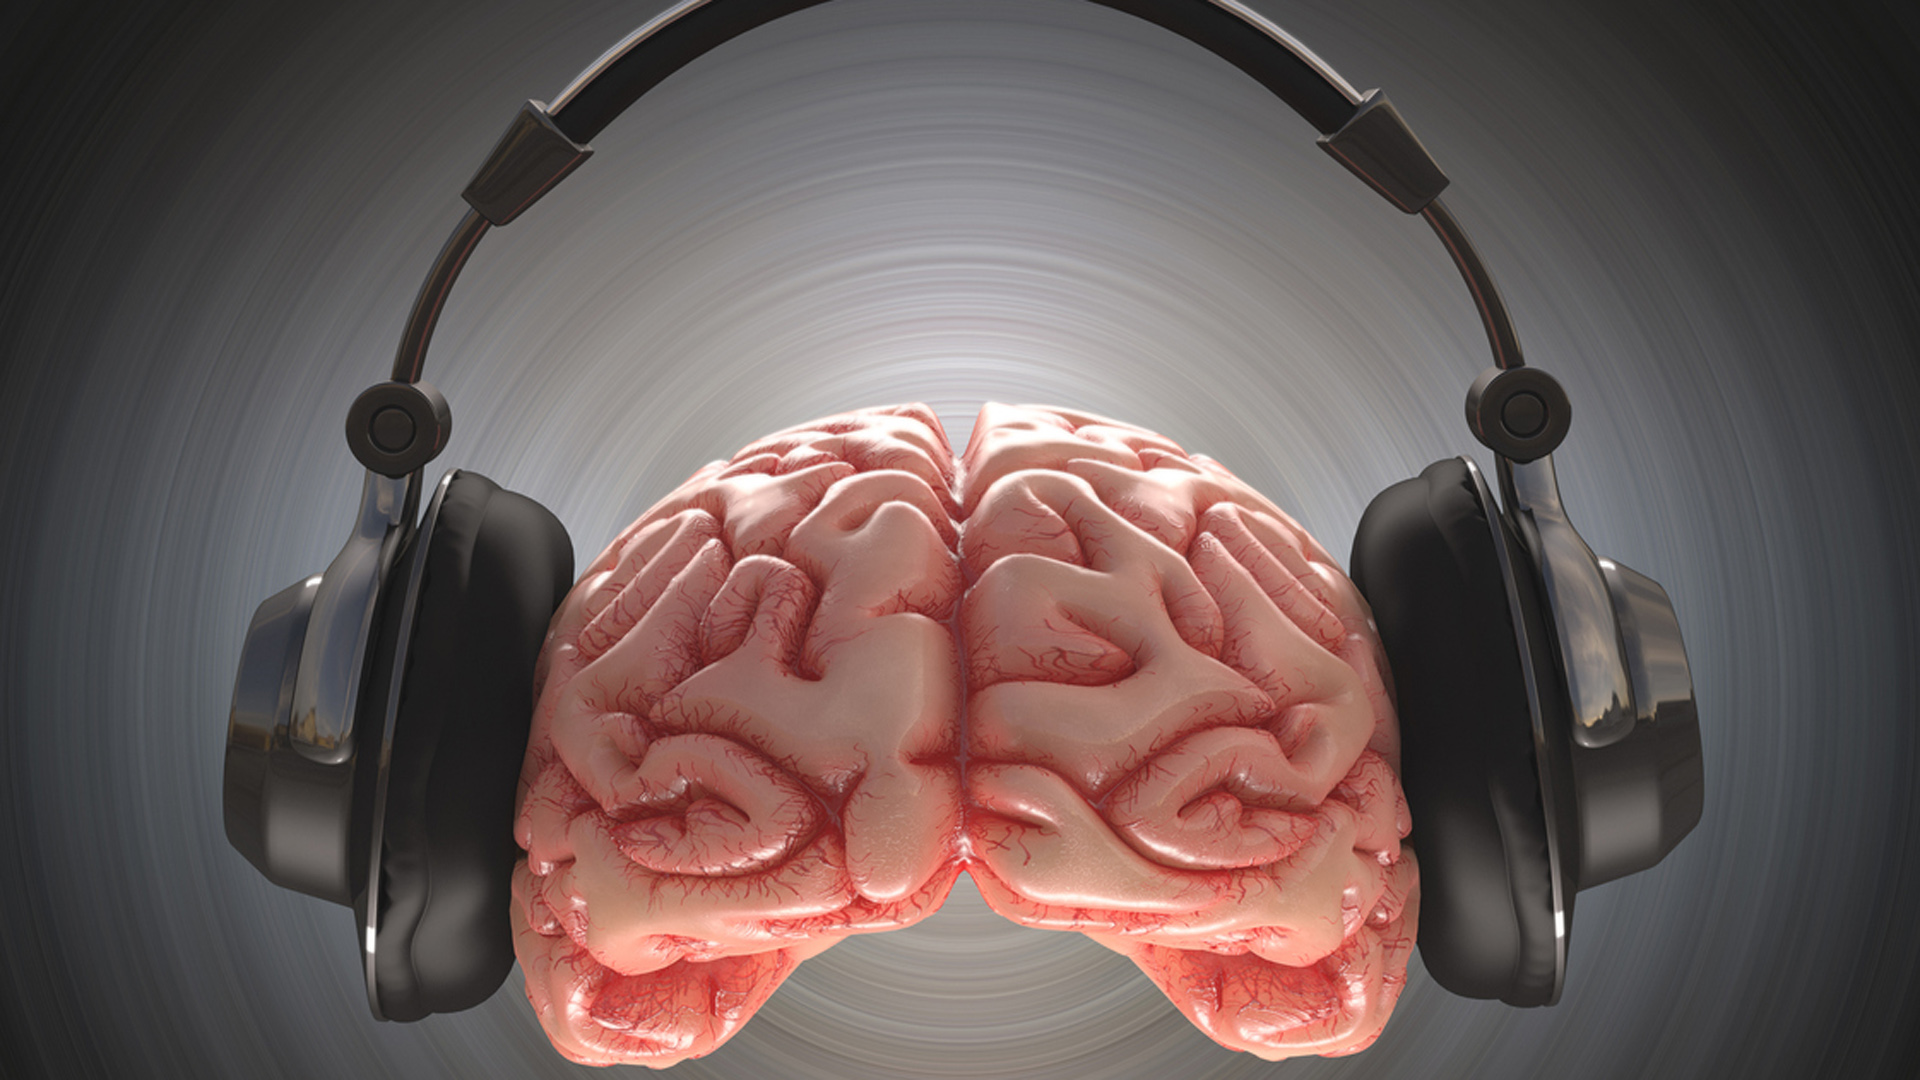 Buongiorno explicó que “desde la musicoterapia utilizamos la conexión de la música con las imágenes o de las imágenes que pueden surgir a partir de la escucha musical, con objetivos terapéuticos”.
